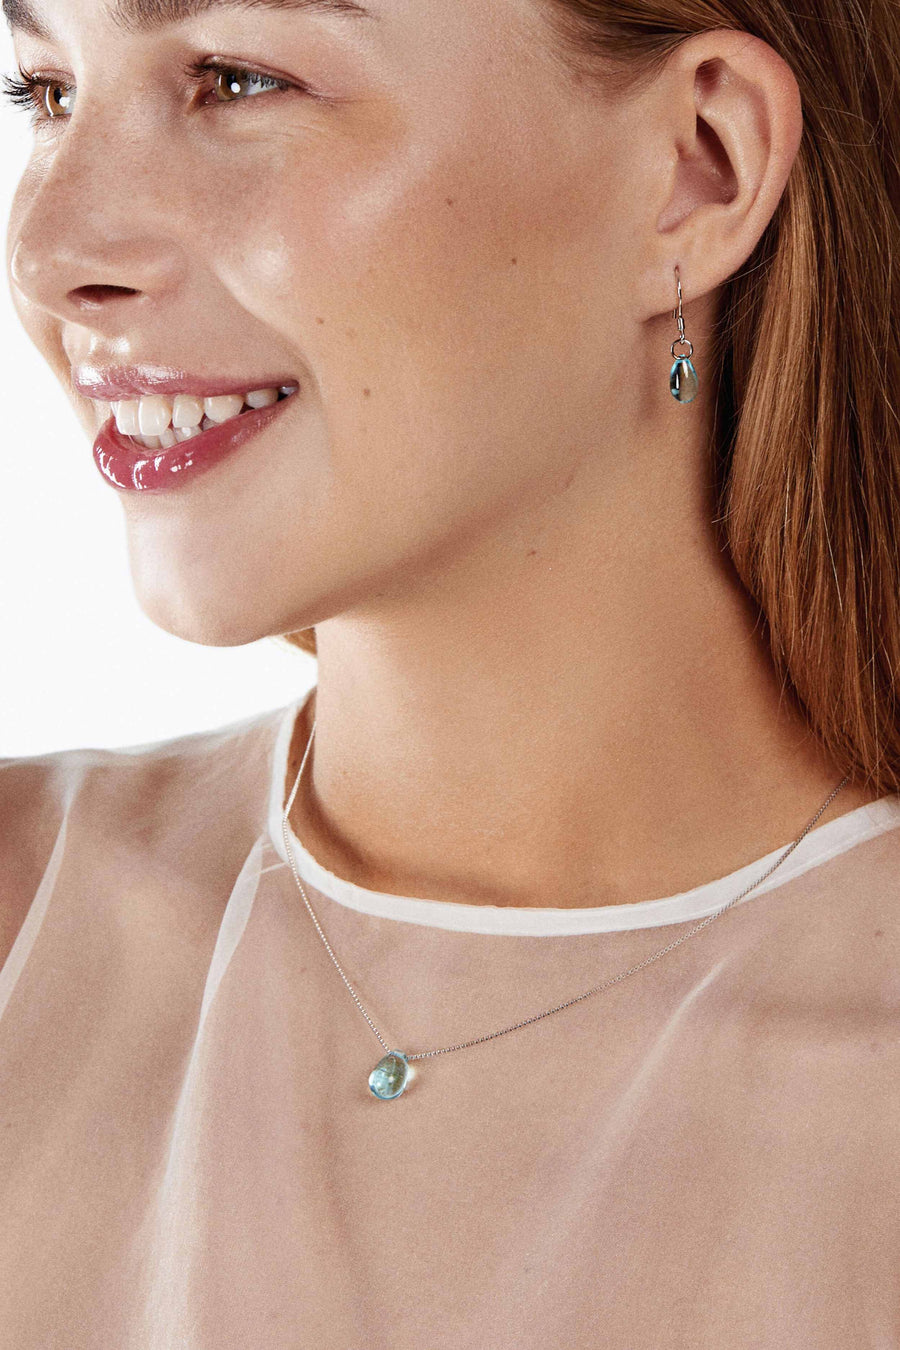 Lovesick Jewelry Sterling Silver Water Drop Pendant Necklace Earrings